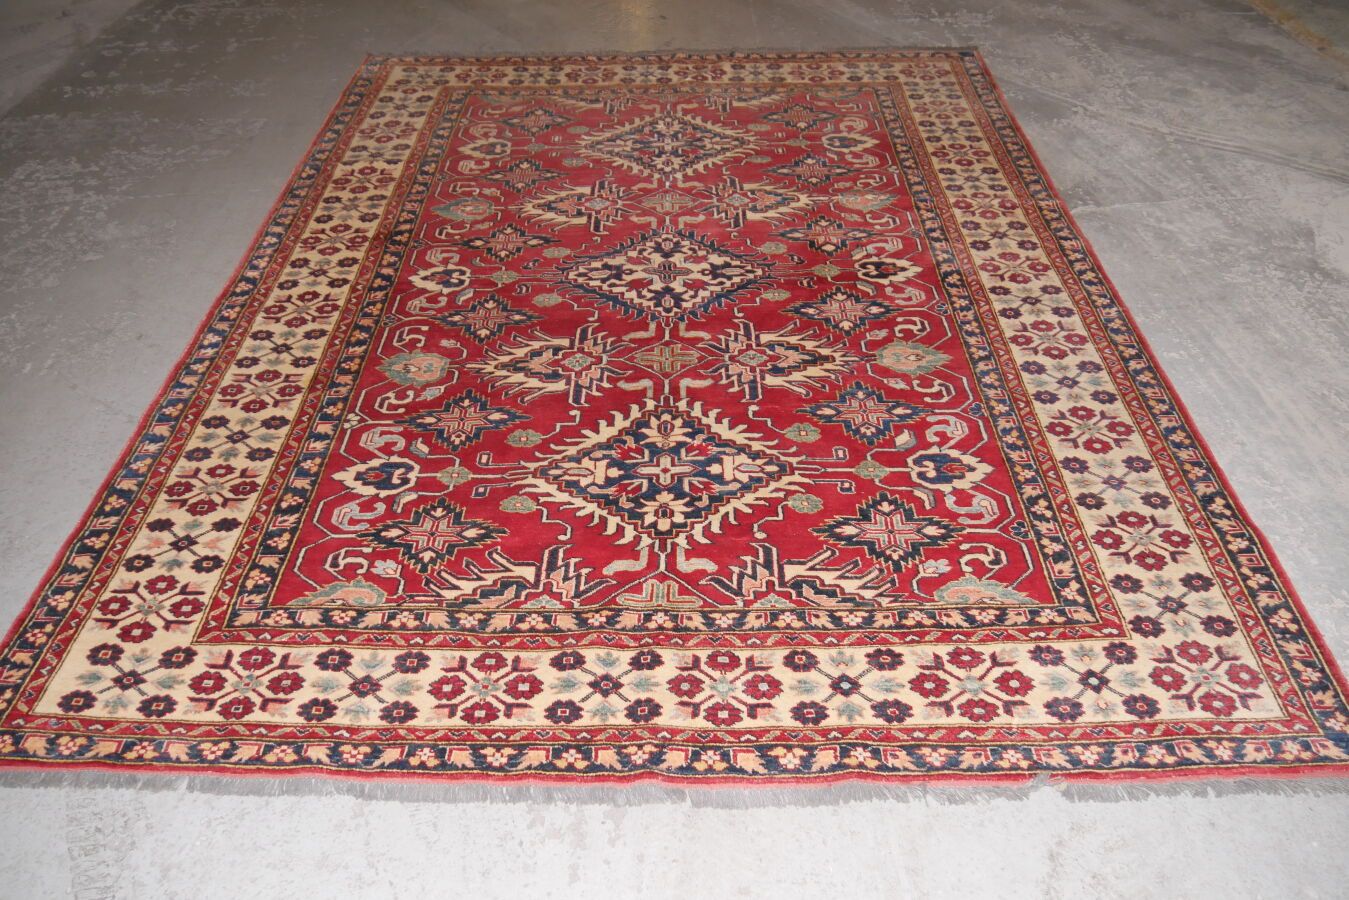 Null 大哈萨克人，南高加索地区，约1980年。
羊毛基础上的羊毛丝绒 
砖红色场地上有多色的几何花纹装饰 
状况良好 
295 x 218 cm